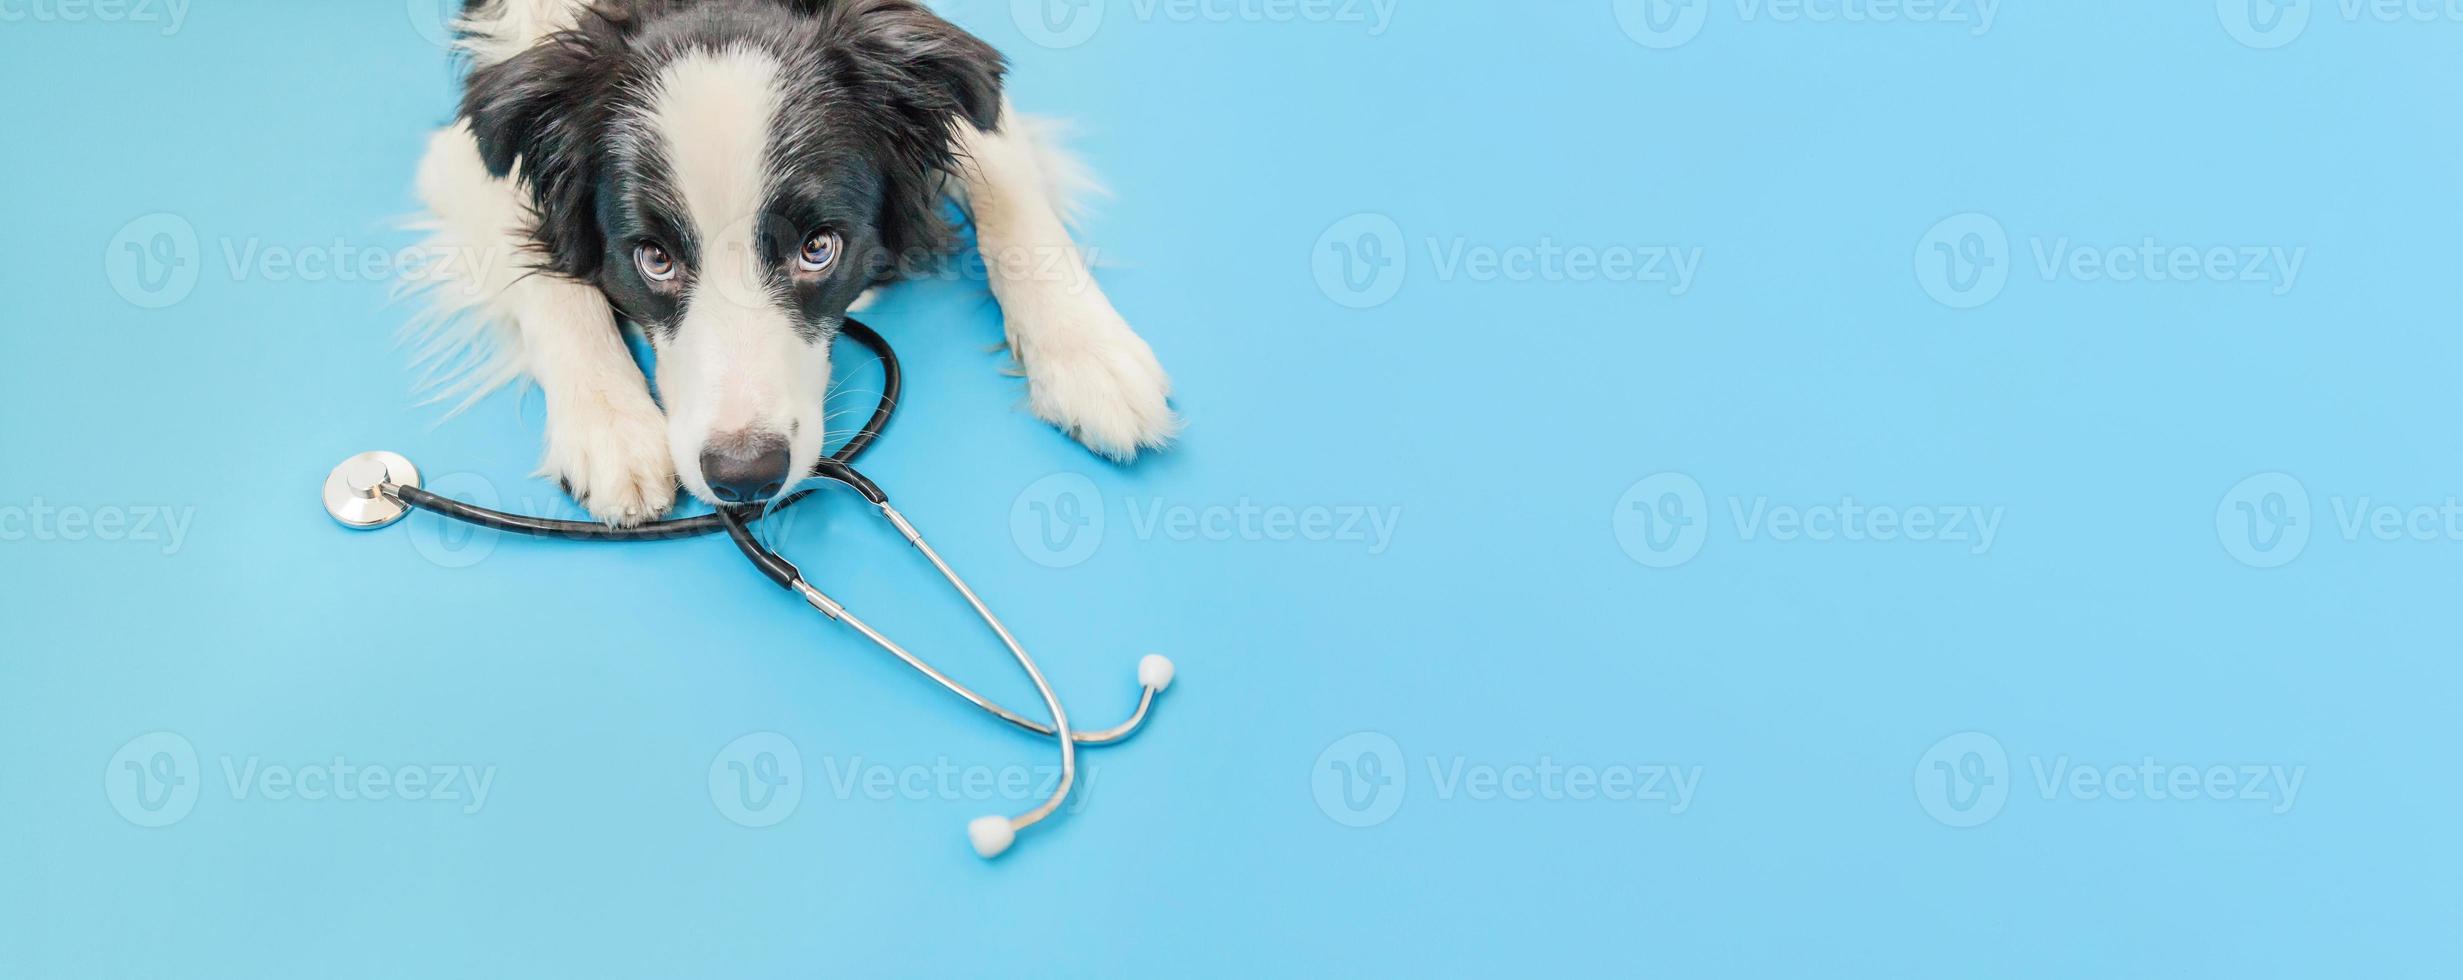 cucciolo di cane border collie e stetoscopio isolato su sfondo blu. cagnolino alla reception presso il medico veterinario in clinica veterinaria. banner di concetto di assistenza sanitaria e animali per animali domestici foto